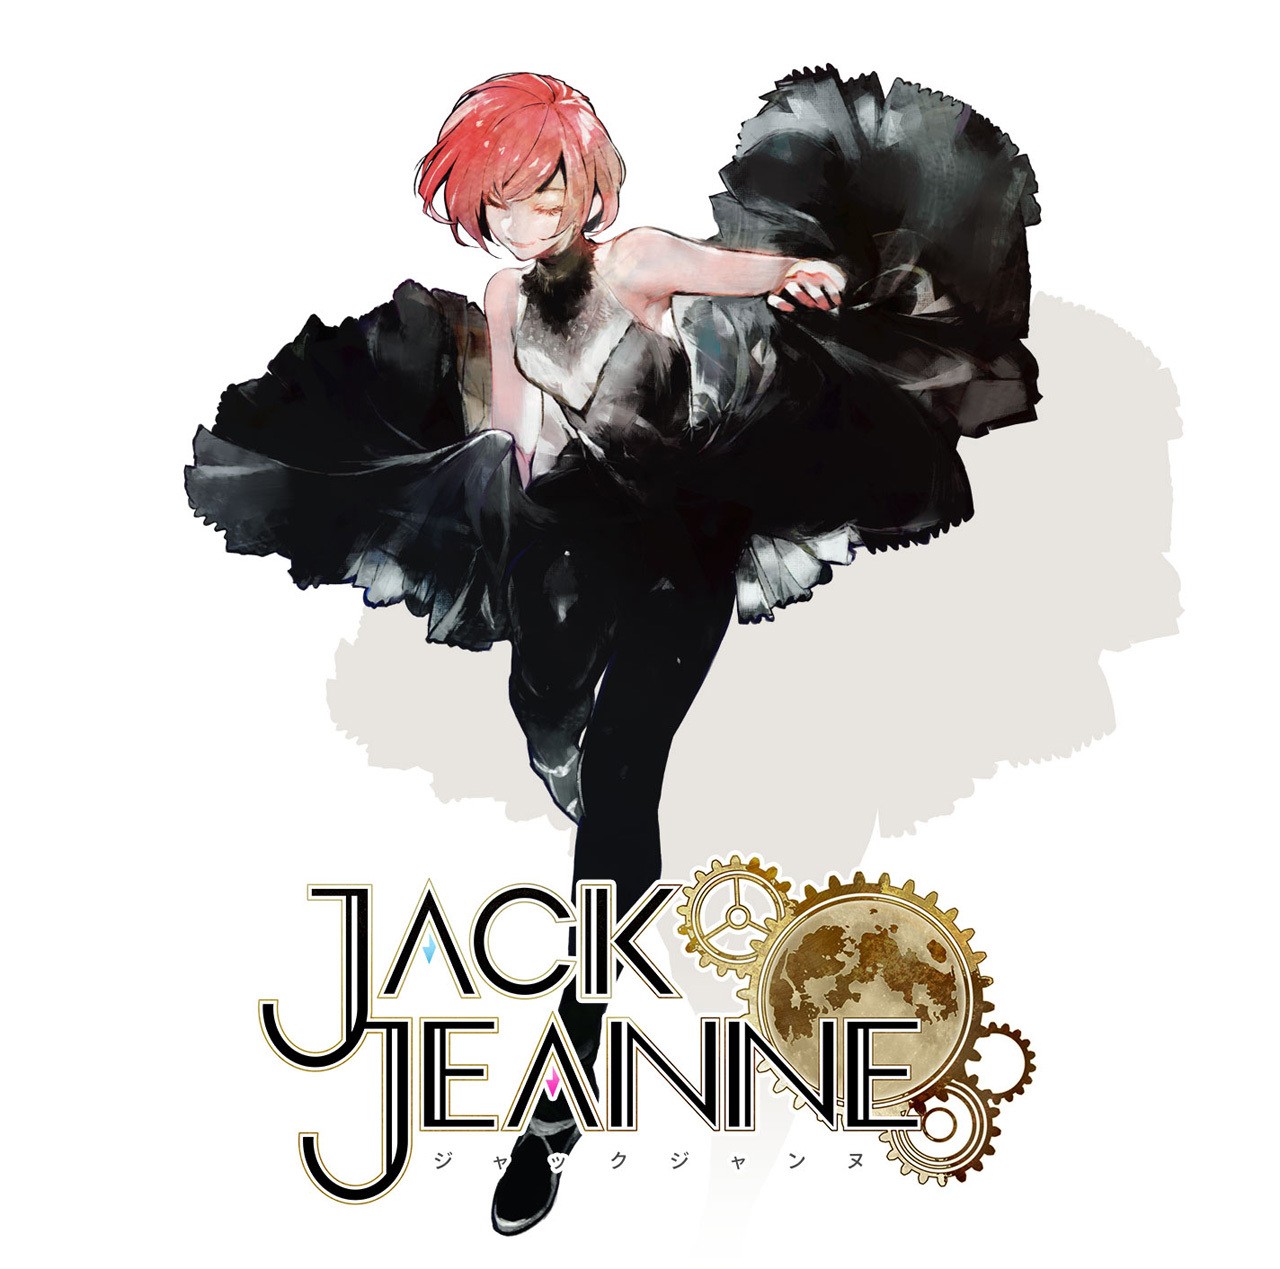 《东京喰种》作者打造的歌剧模拟游戏《JACKJEANNE》公开最新宣传影片